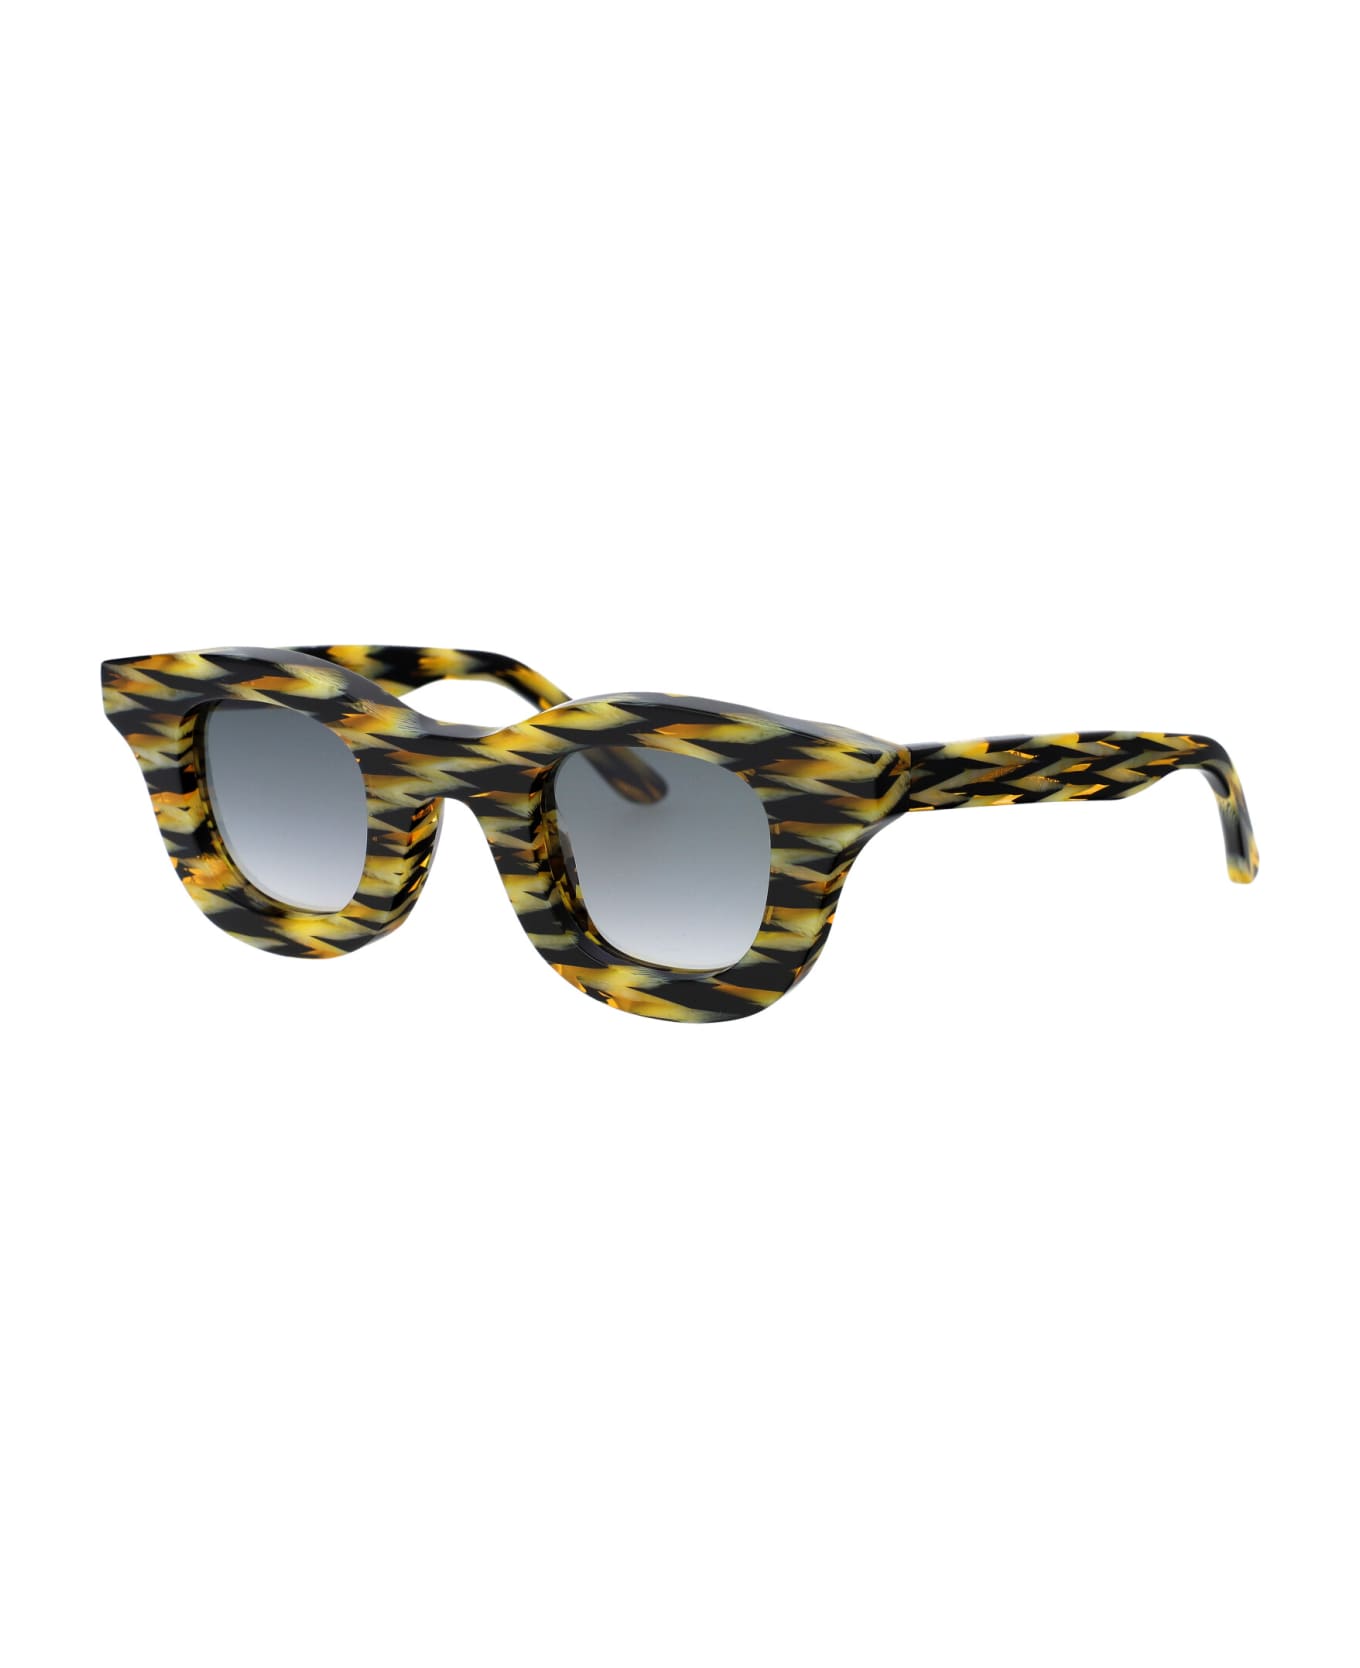 Thierry Lasry Hacktivity Sunglasses - 3101 MULTICOLOR